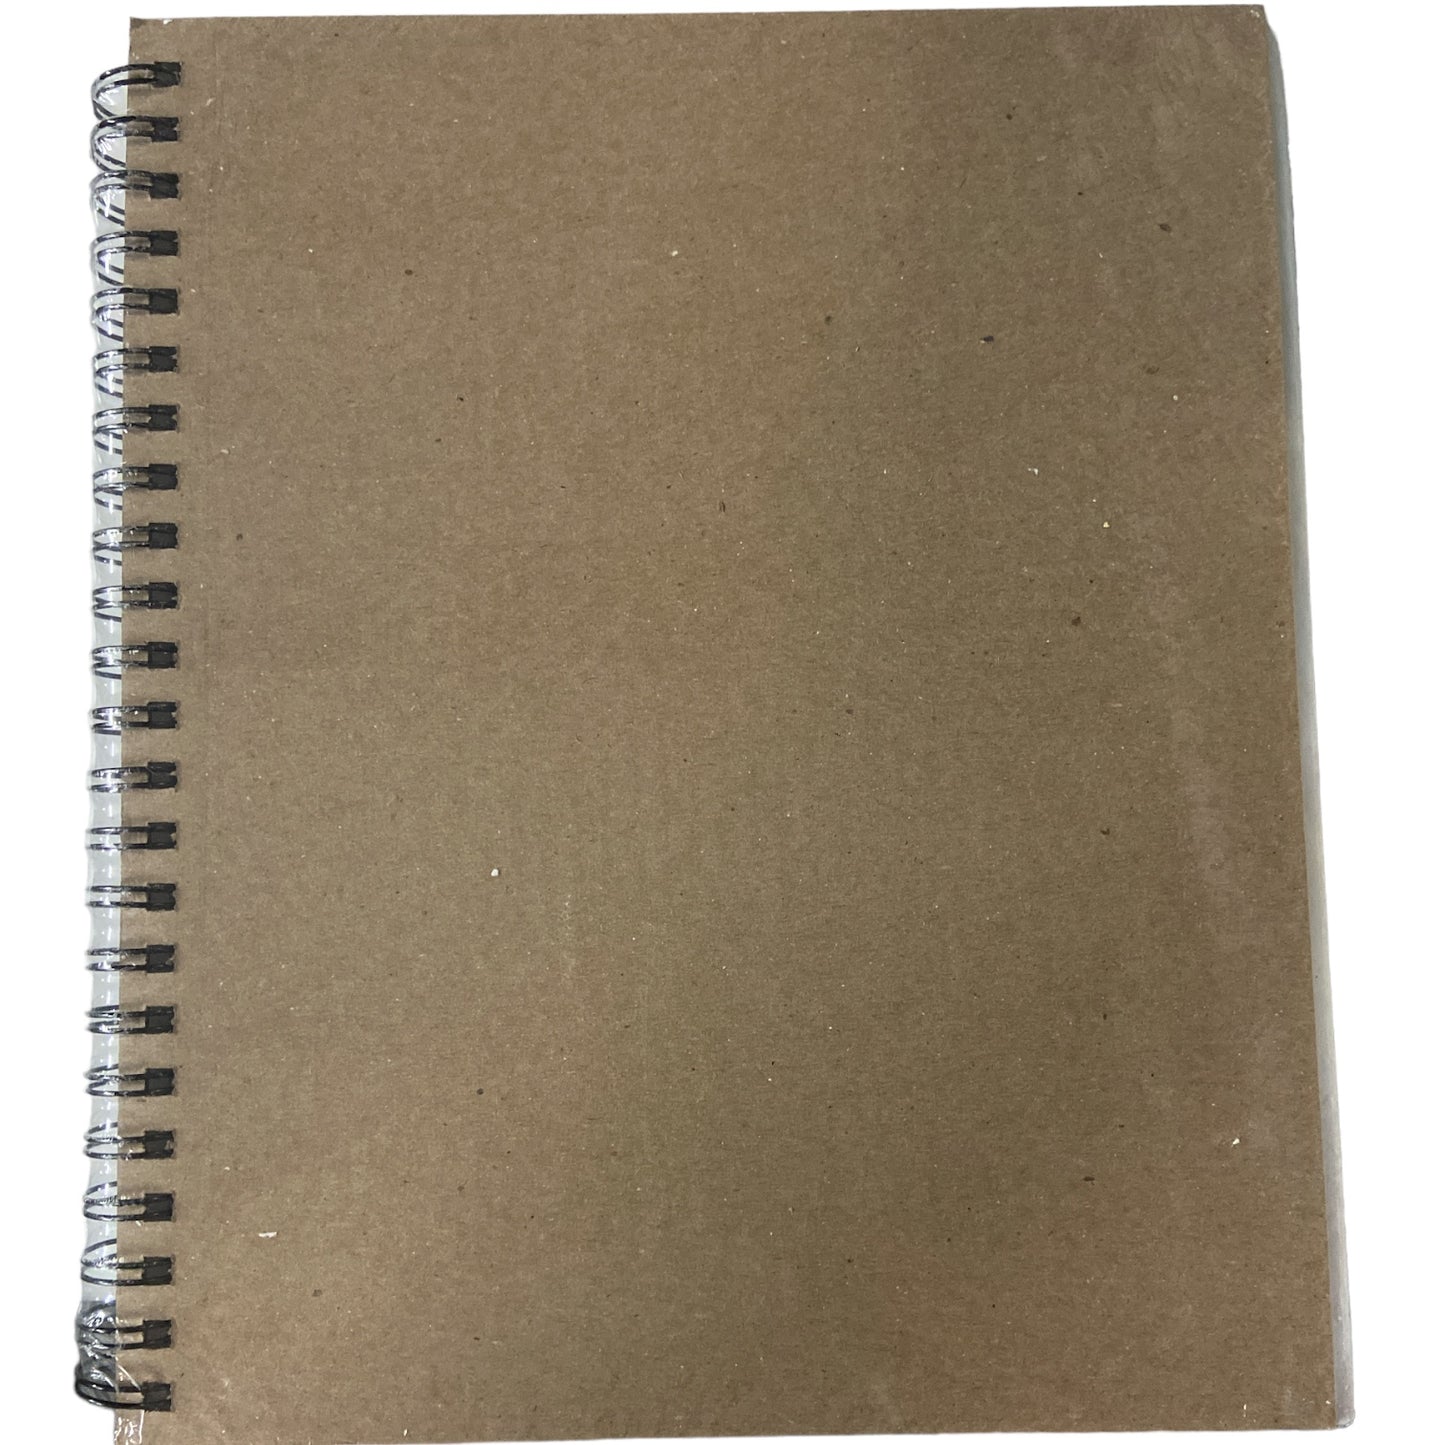 Strathmore Vison 300 Series Sketchbook, 50lb/74GSM, (2 Pack)